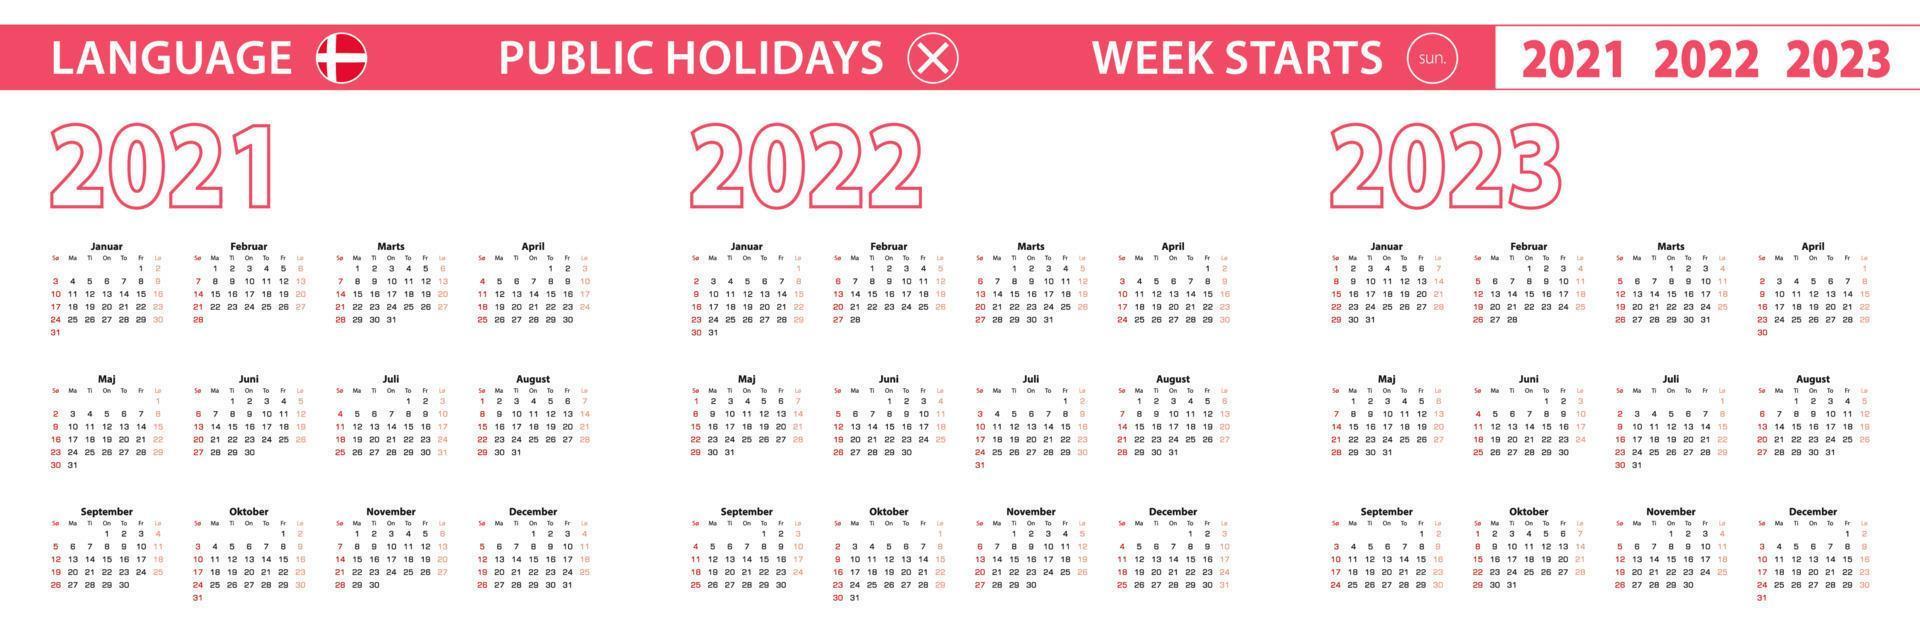 Calendario vettoriale anno 2021, 2022, 2023 in lingua danese, la settimana inizia domenica.